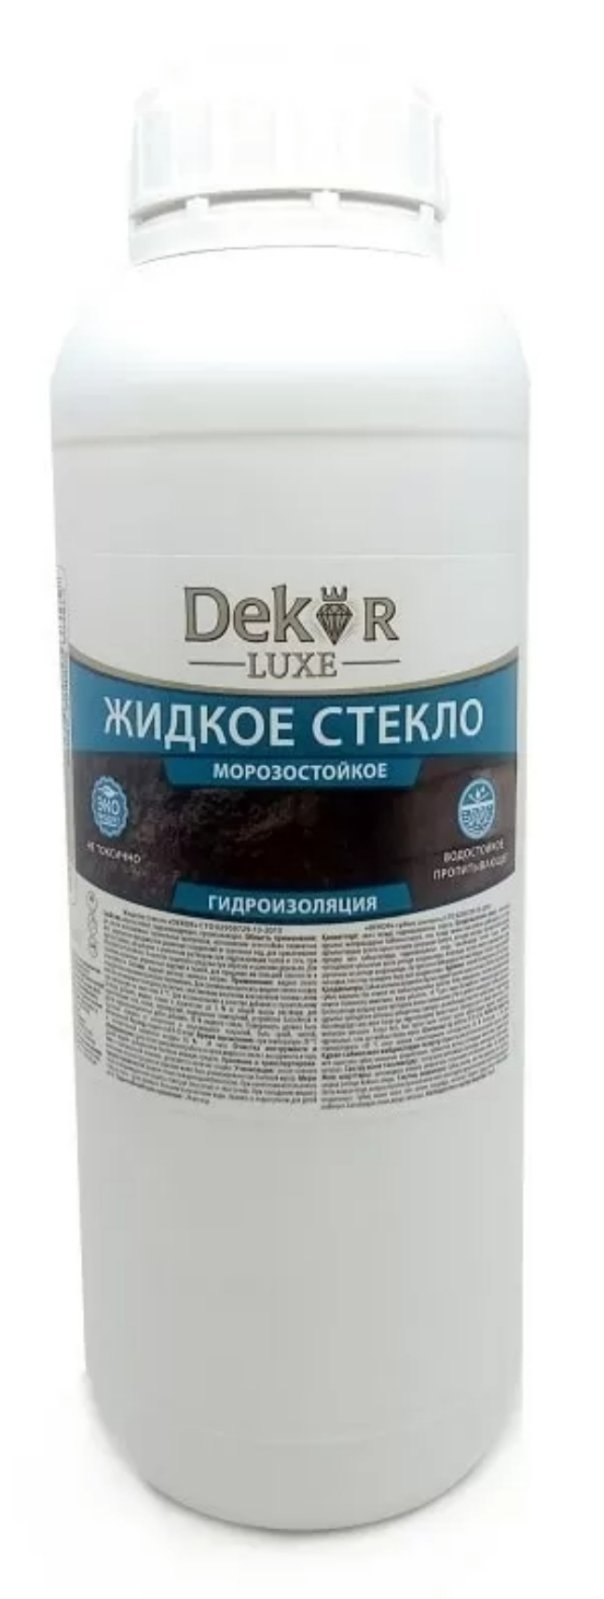 Жидкое стекло "DEKOR" 1,3 кг